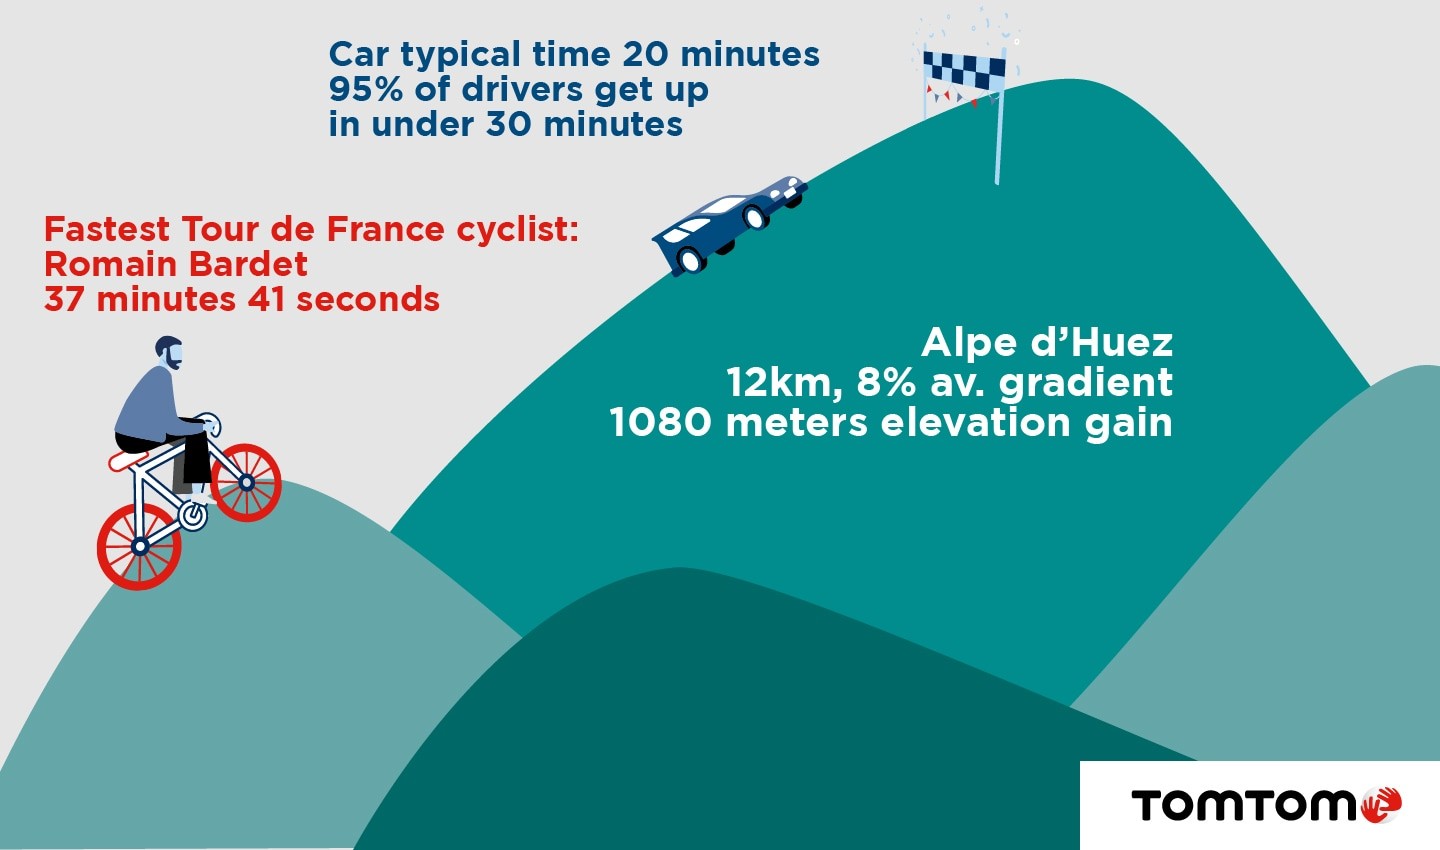 Alpe d'Huez infographic